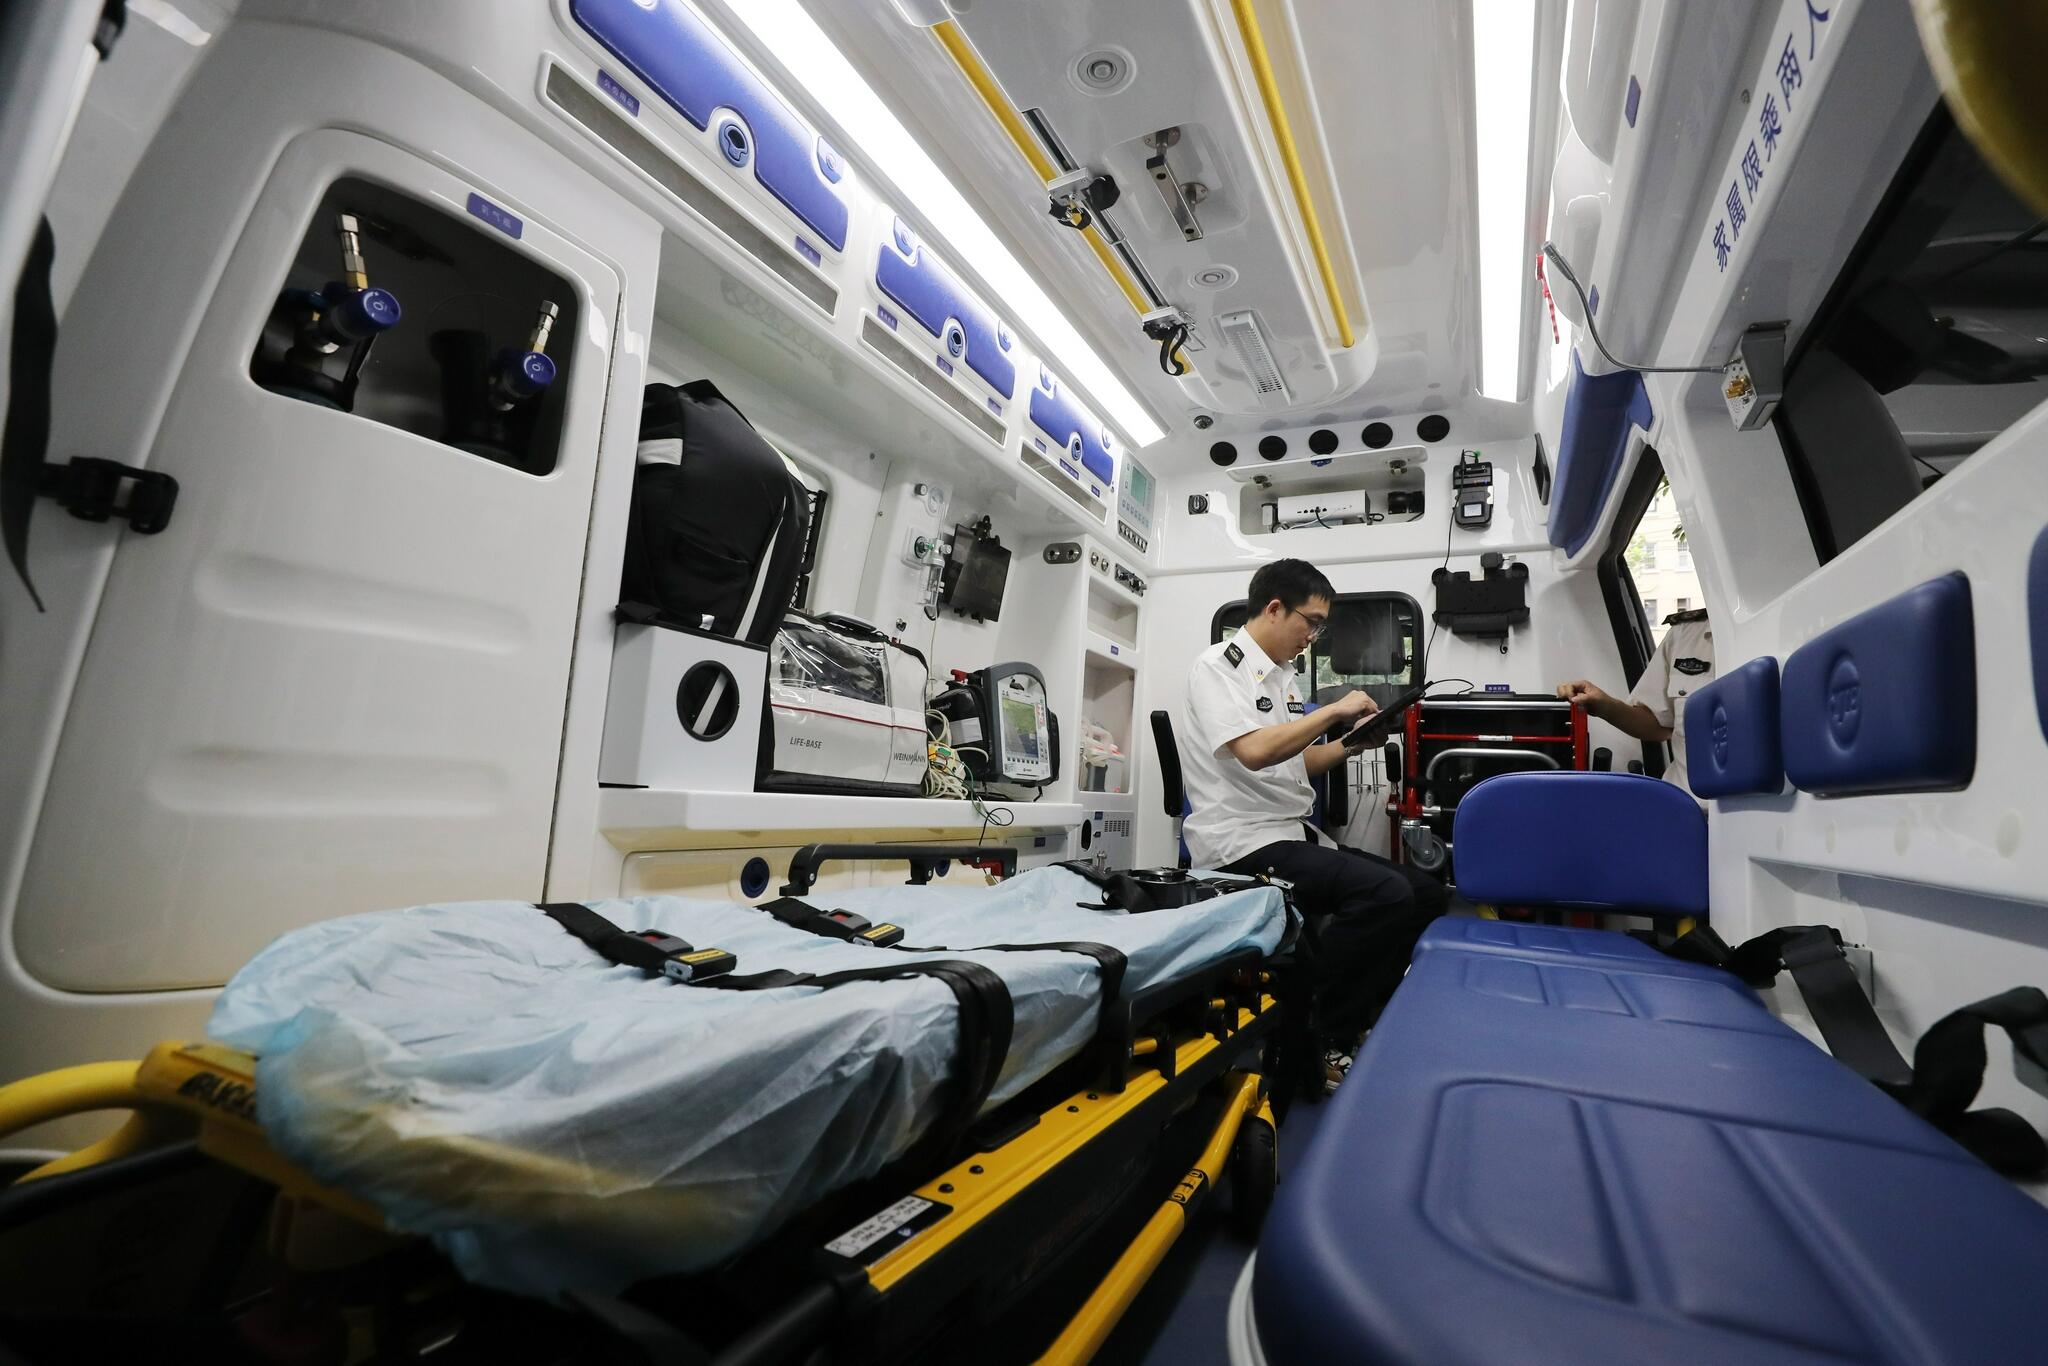 宁波救护车转运患者-无缝转院-车型种类丰富